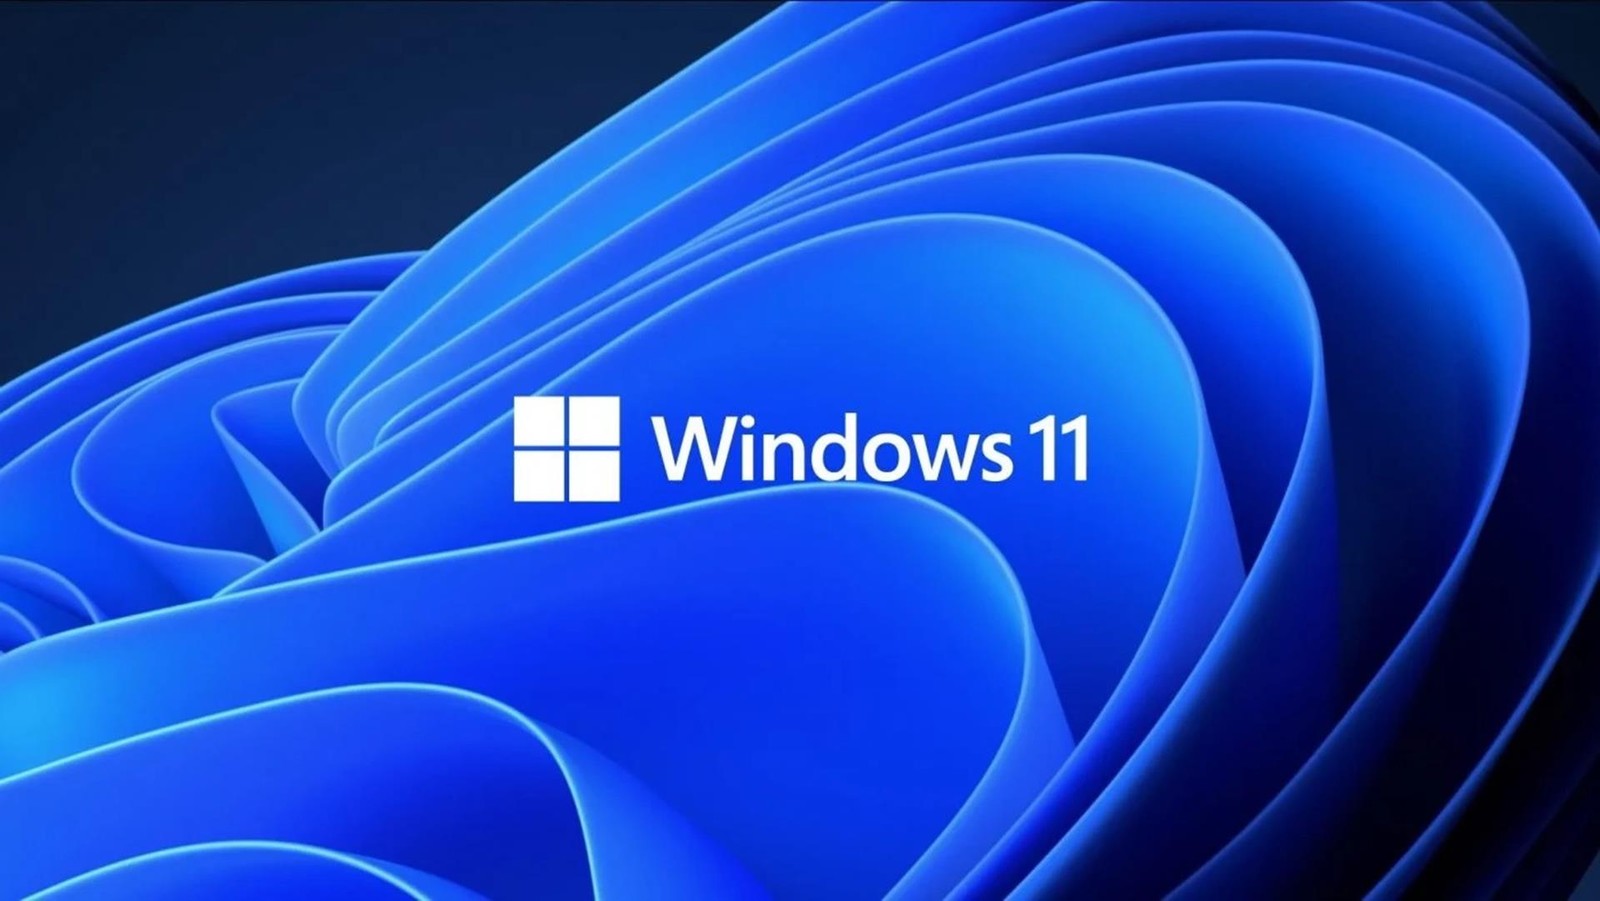 Nowa funkcja w Windows 11. Microsoftowi naprawa błędów zabiera śmiesznie dużo czasu